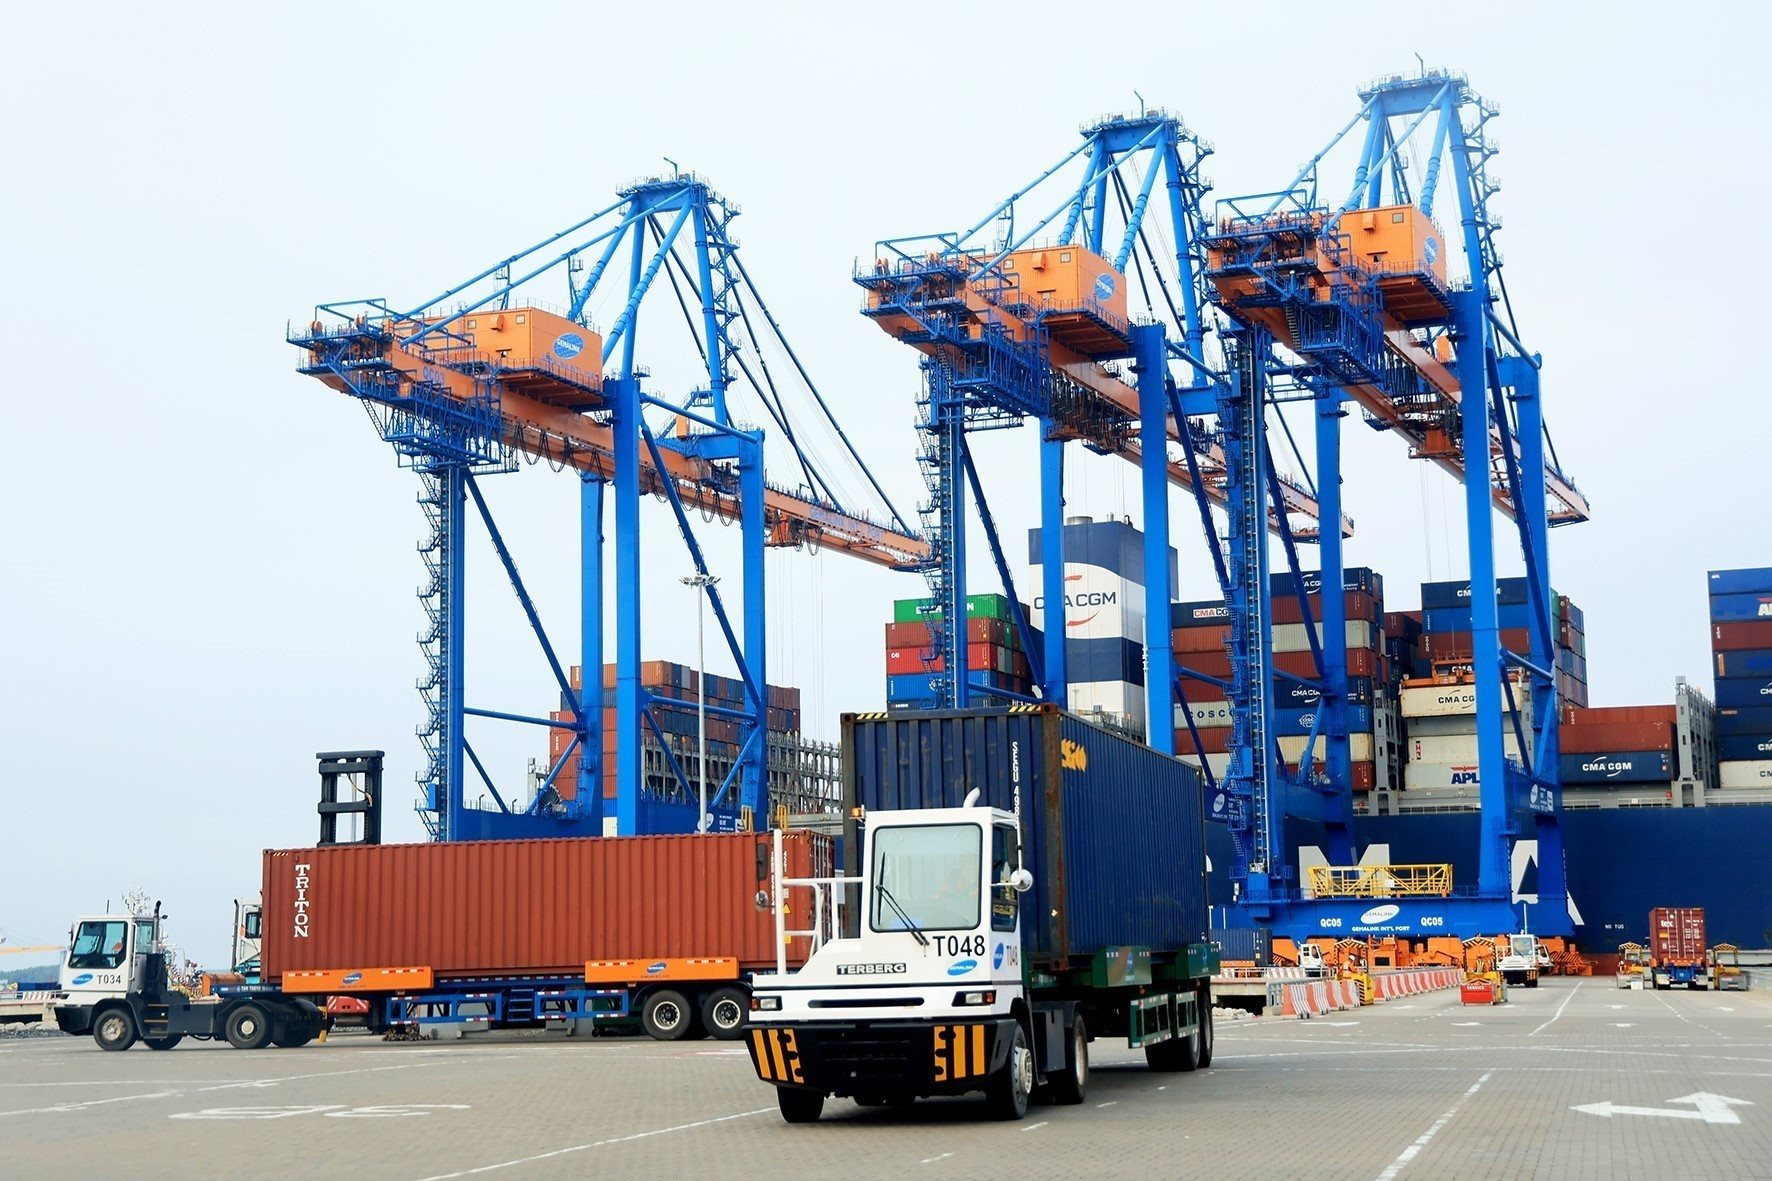 Vận chuyển hàng hóa xuất nhập khẩu tại Cảng nước sâu Gemalink, thị xã Phú Mỹ (Bà Rịa - Vũng Tàu). Ảnh: Hồng Đạt - TTXVN